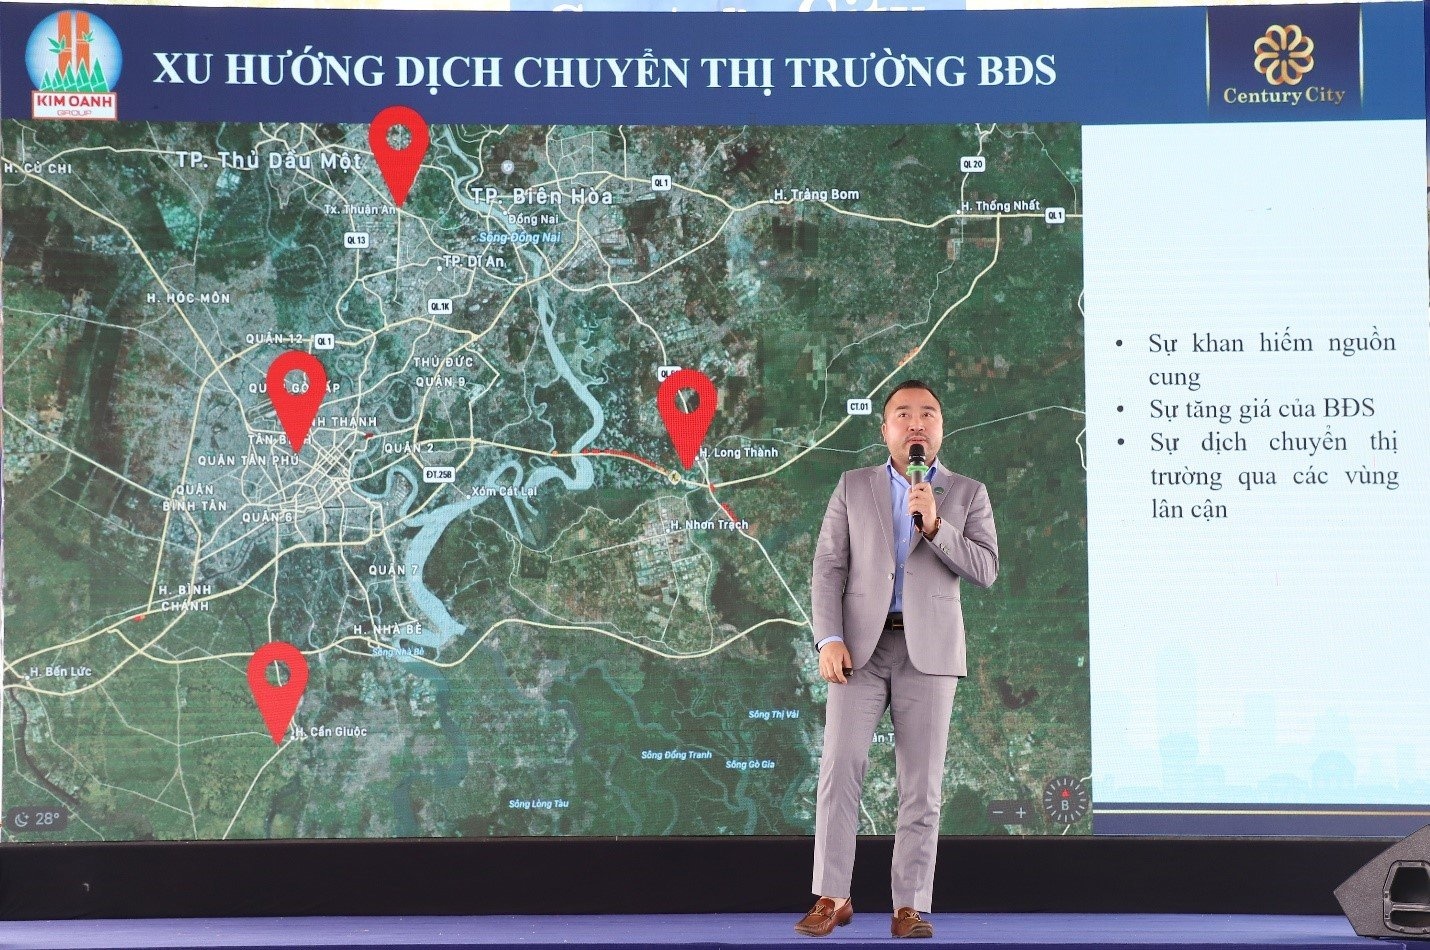 Ông Đào Ngọc Duyên – Tổng Giám đốc Tập đoàn Suncity chia sẻ thêm thông tin dự án và kinh nghiệm tư vấn kinh doanh